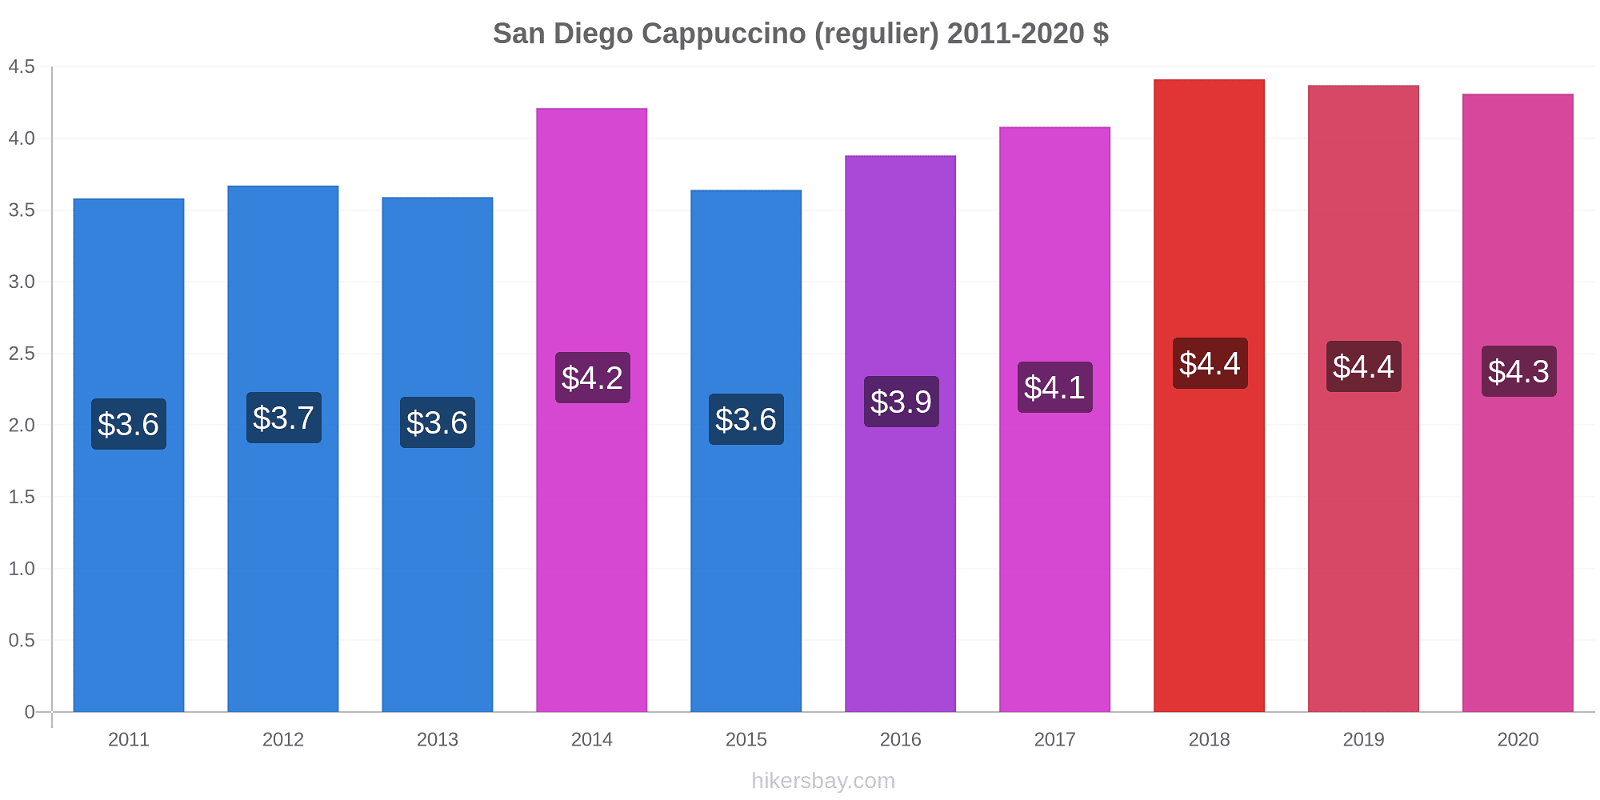 San Diego prijswijzigingen Cappuccino (regelmatige) hikersbay.com